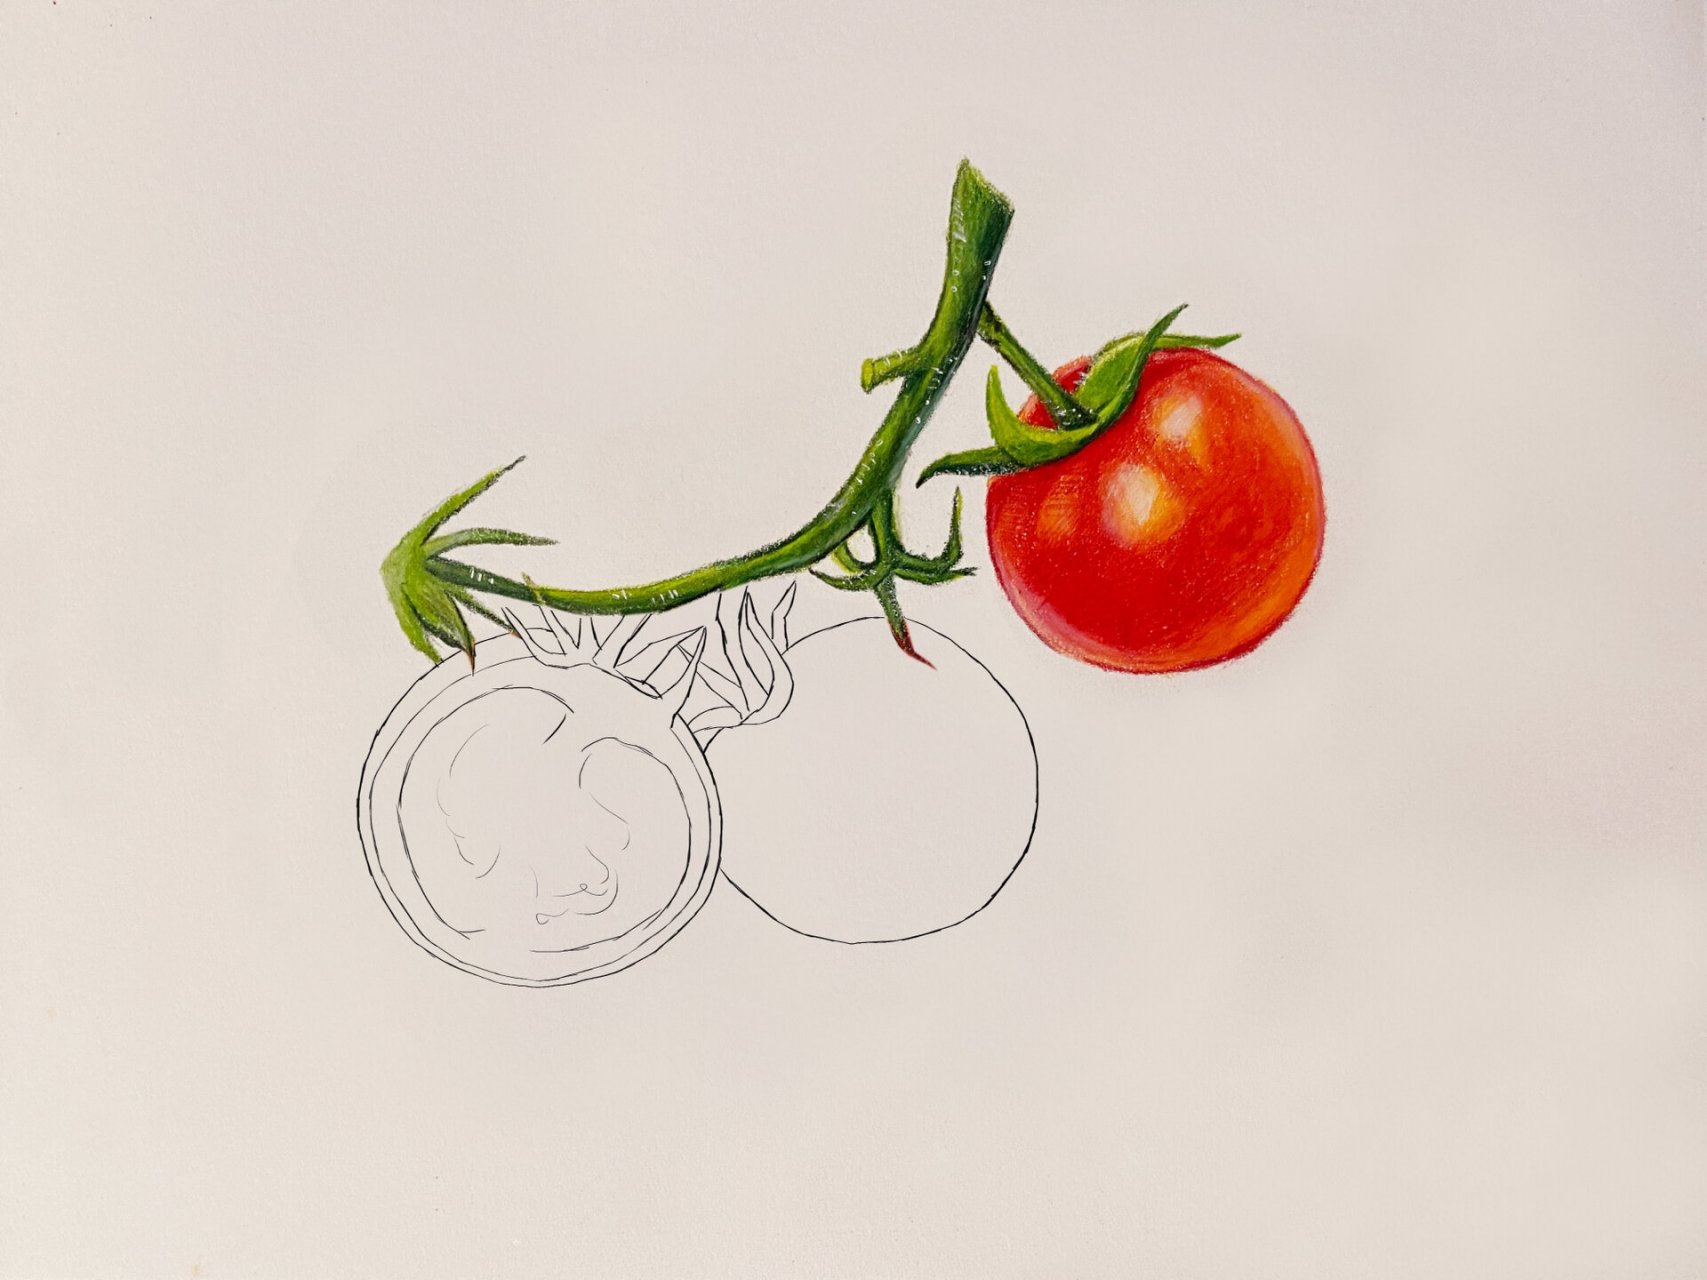 【彩铅画】小番茄(内附步骤图)